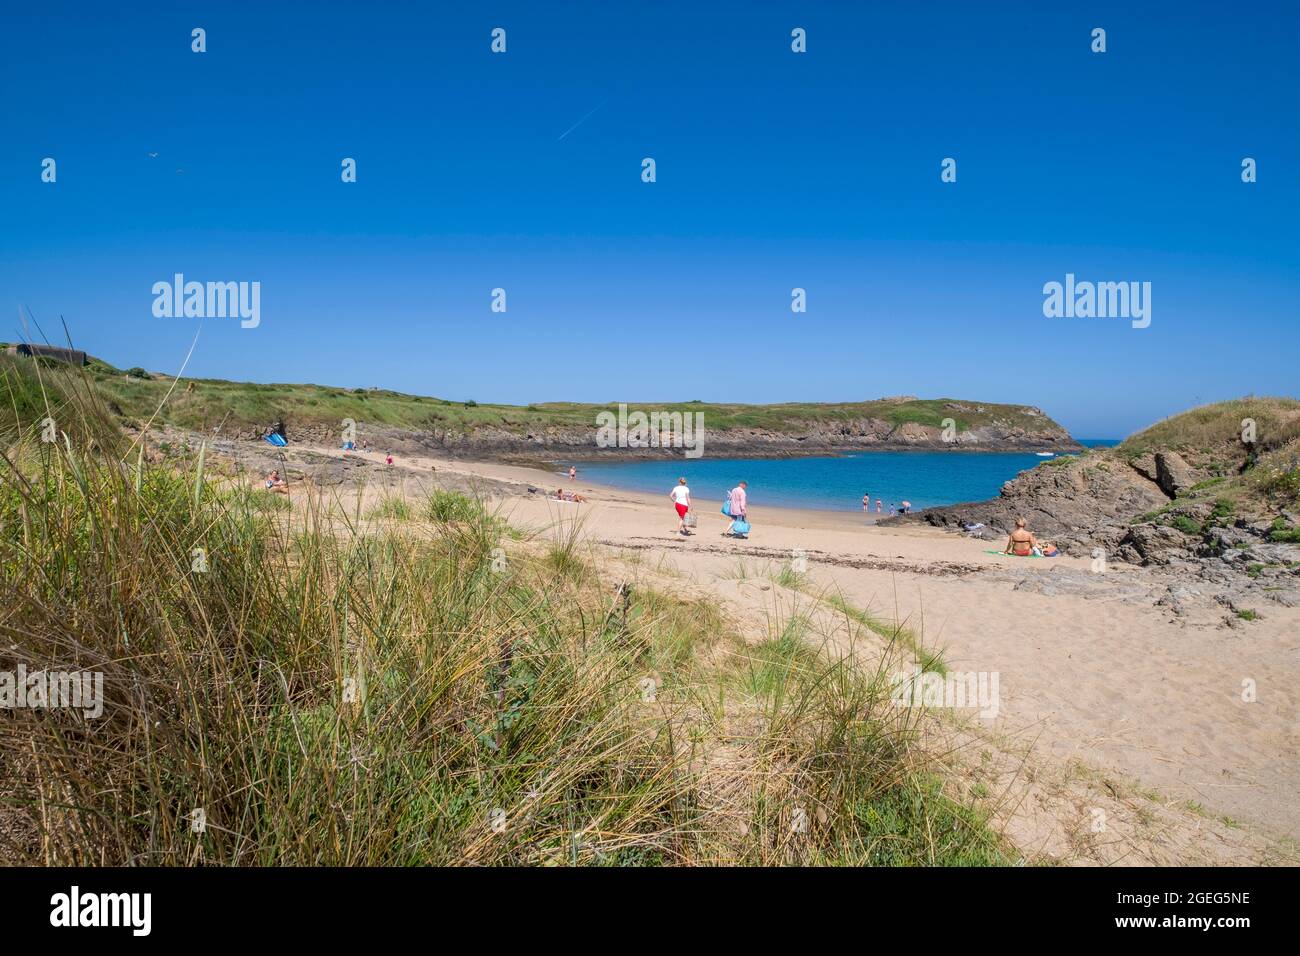 Saint Malo (Bretagna, Francia nord-occidentale): Panoramica del promontorio "pointe de la Varde" dalla spiaggia "plage de la Varde" Foto Stock